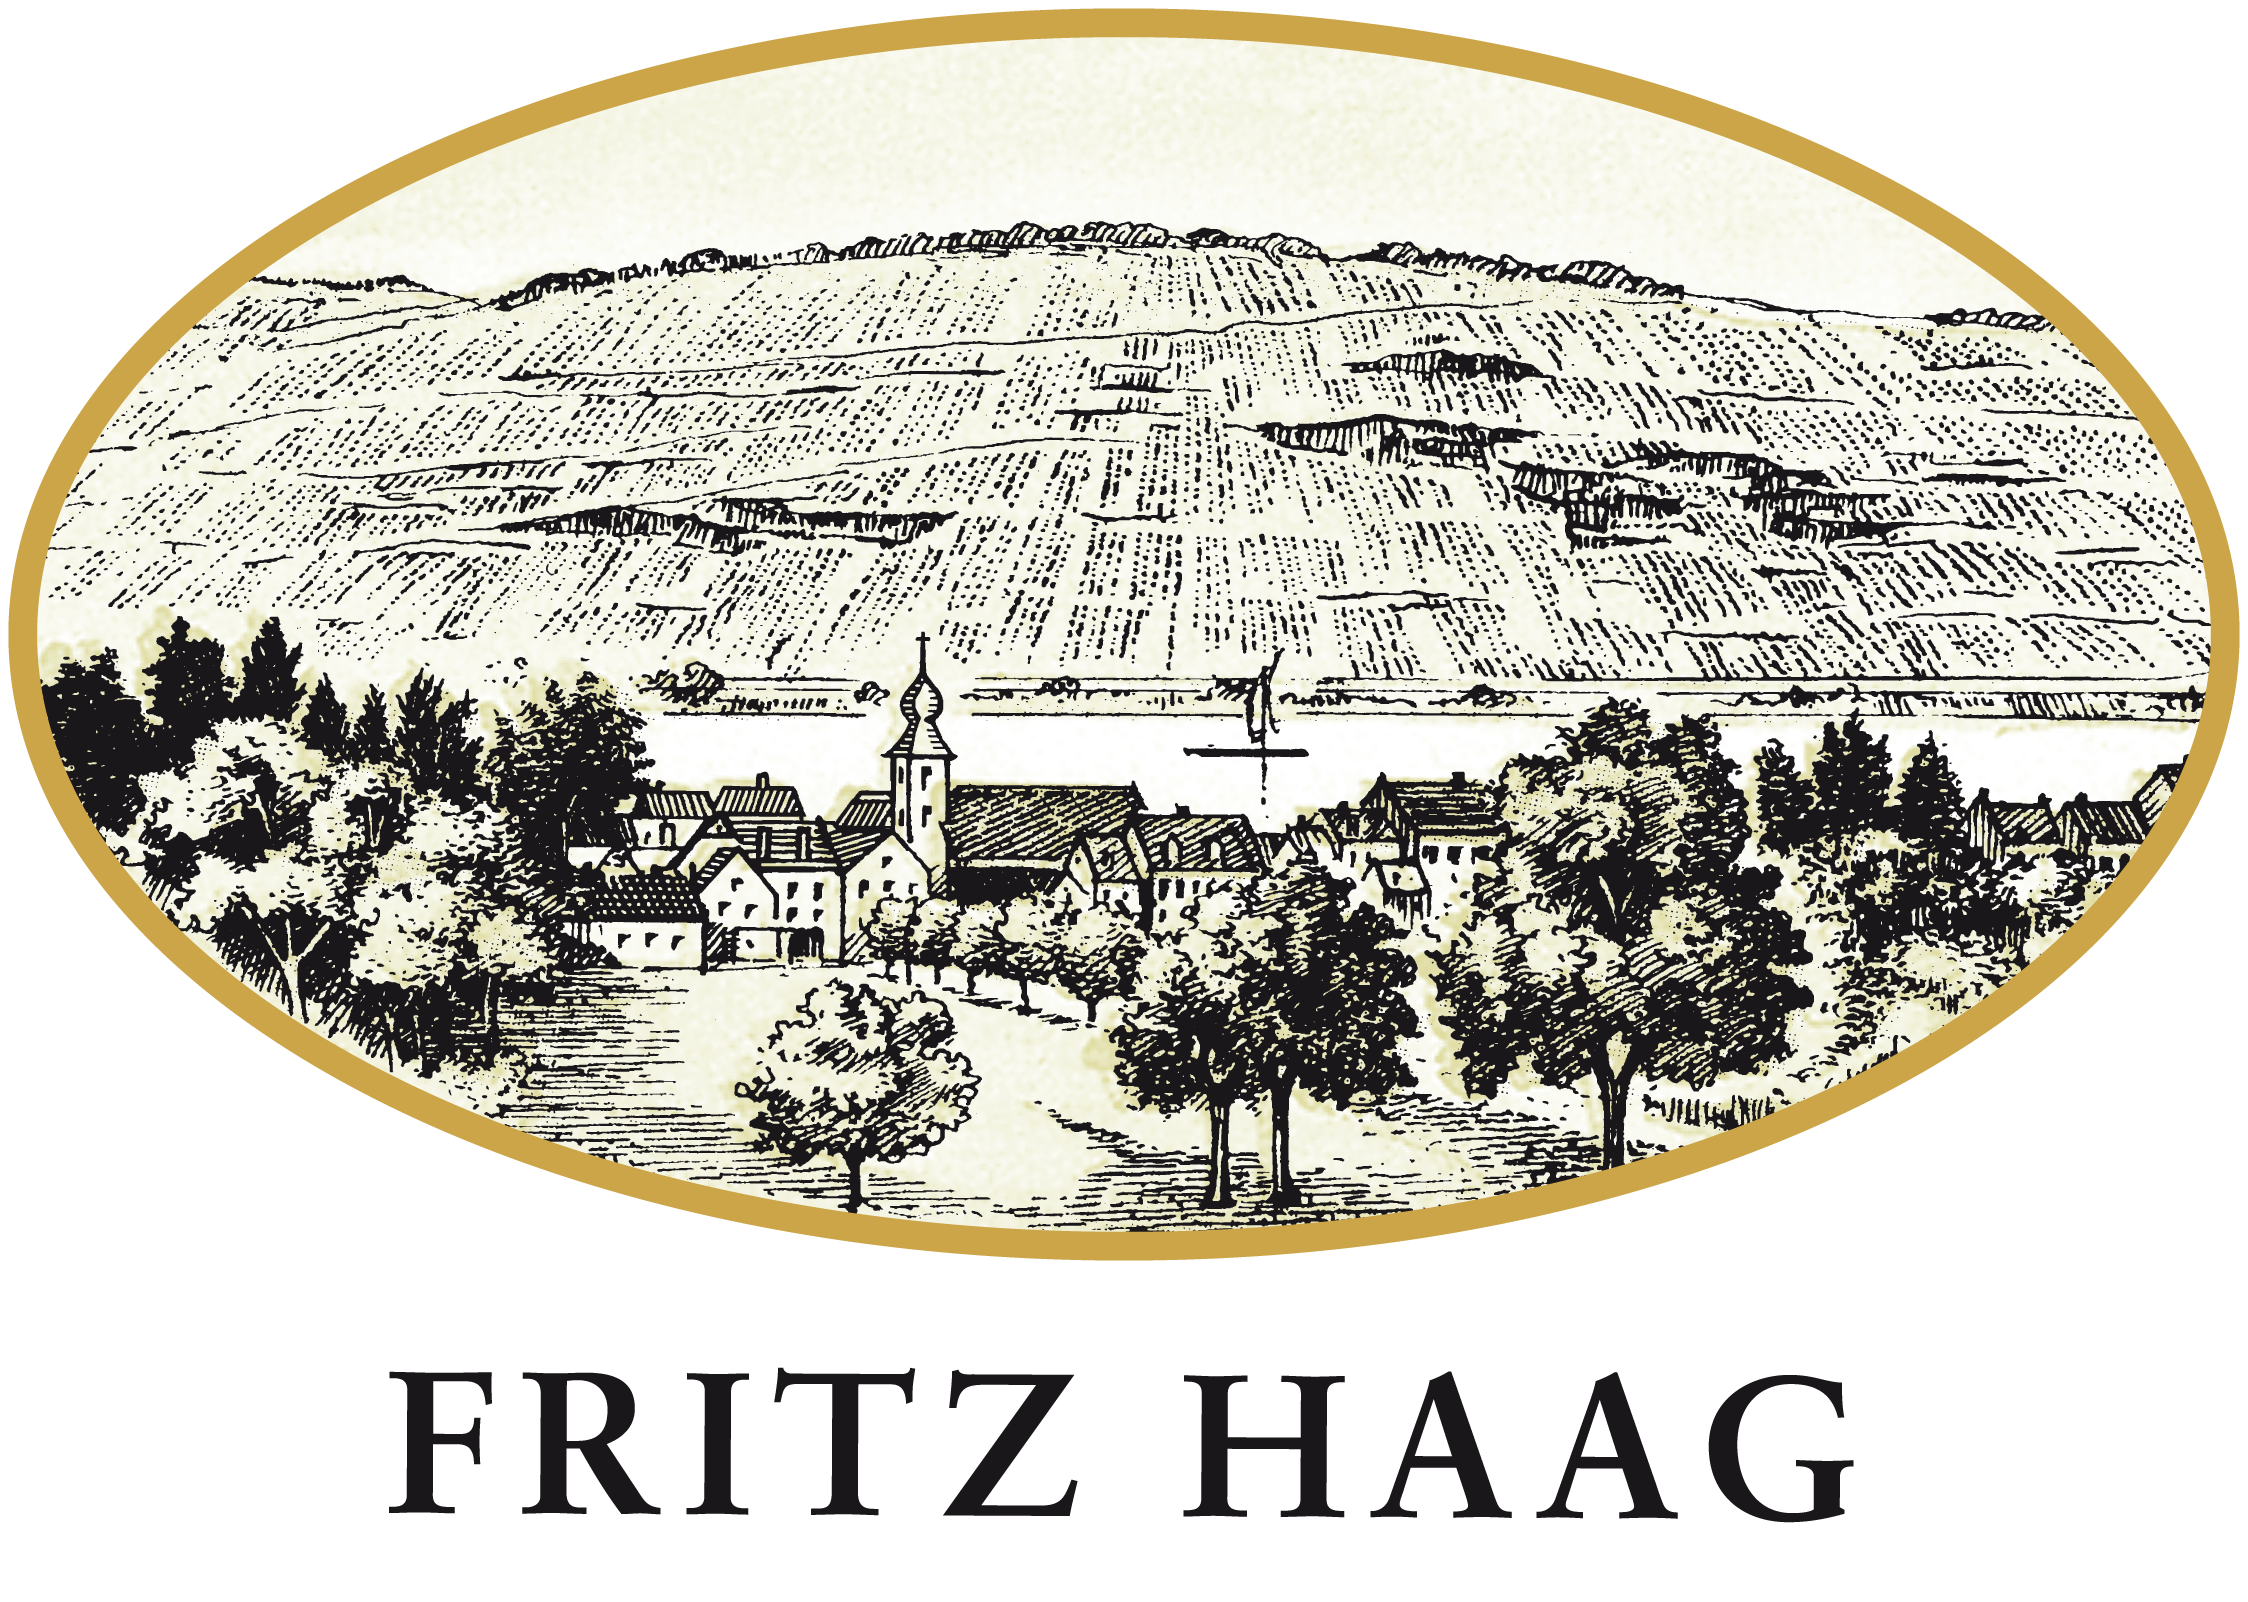 Fritz Haag